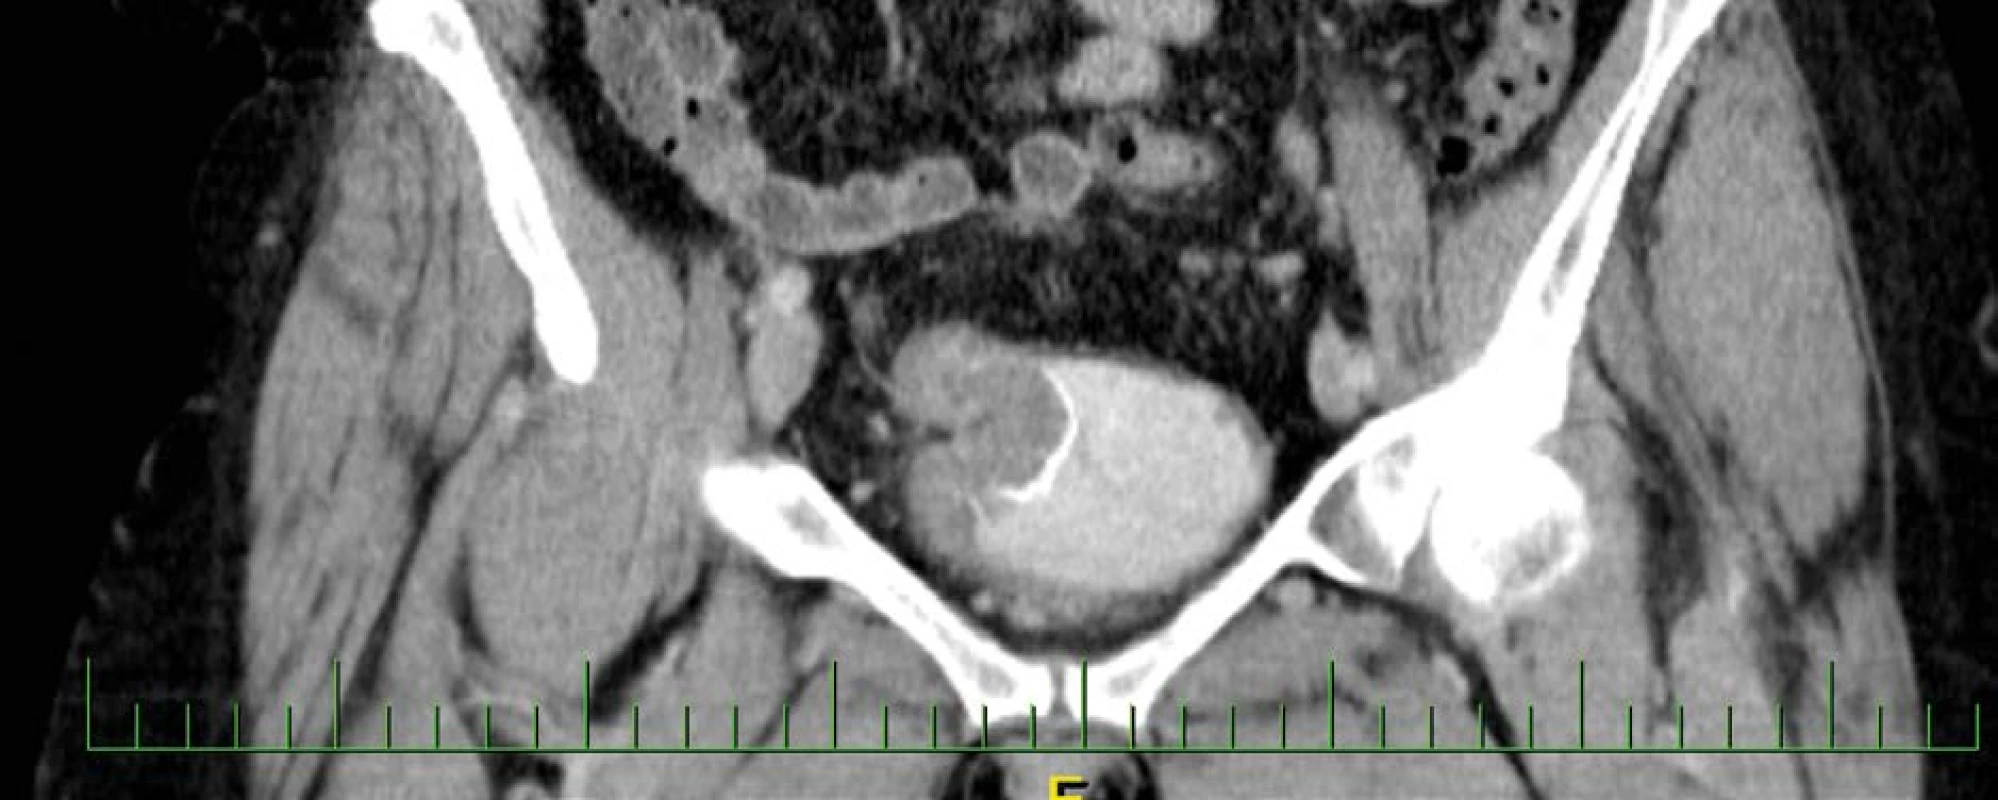 CT vyšetření zachycující intraluminální expanzi v augmentovaném močovém měchýři<br>
Fig. 2. CT examination capturing intraluminal expansion in the augmented bladder